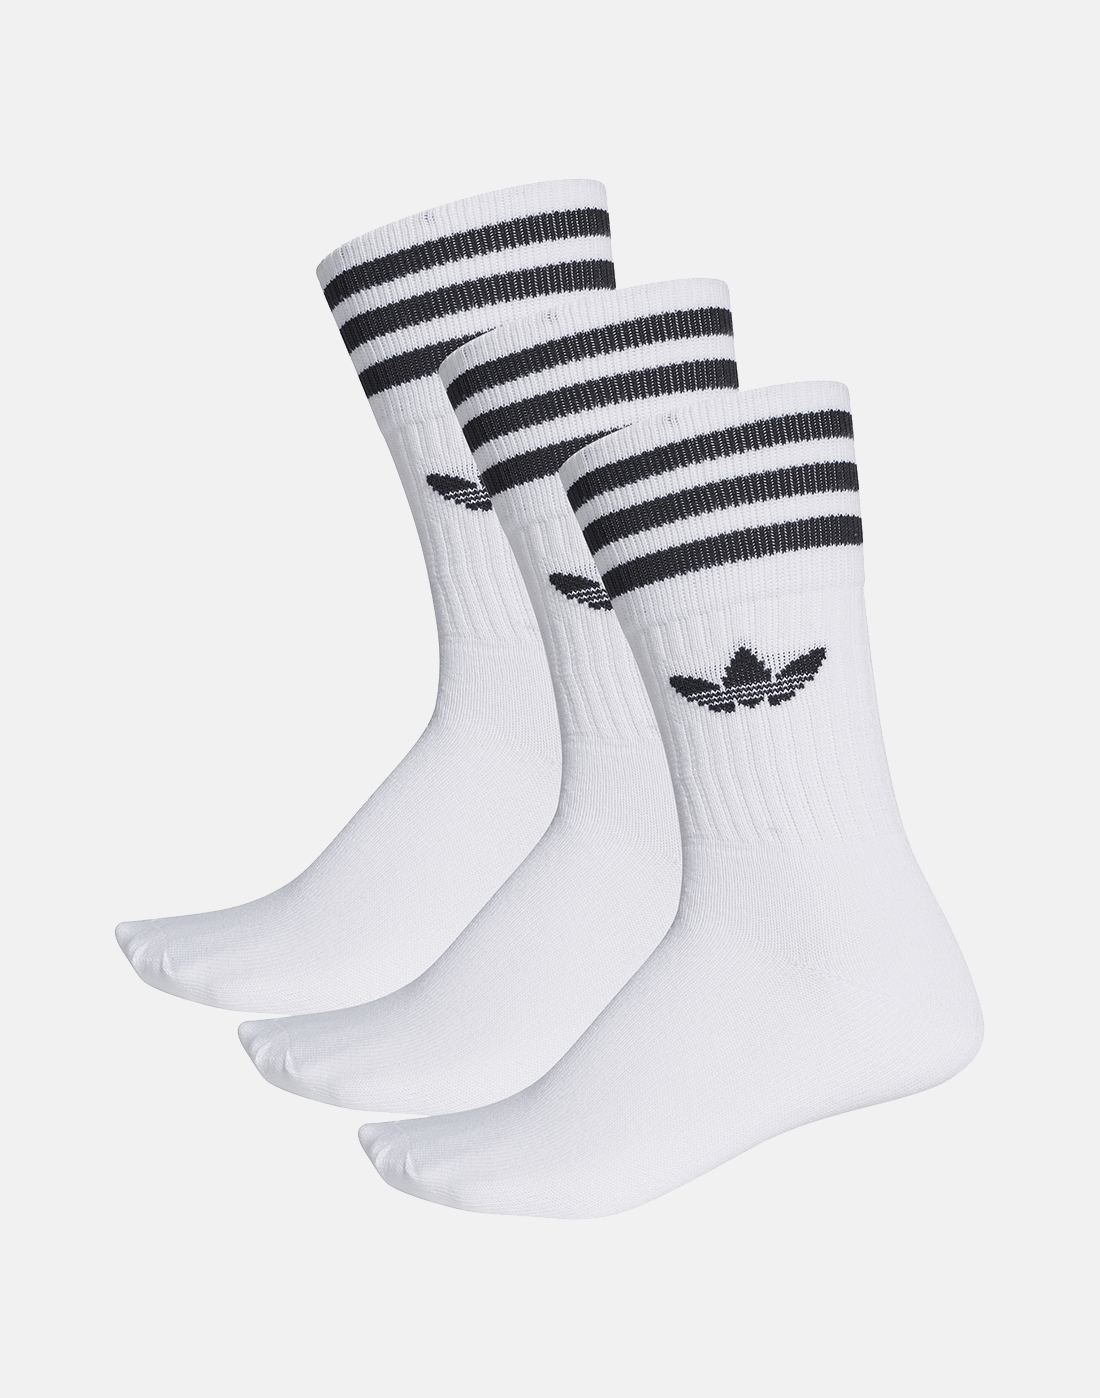 adidas Originals Mens Trefoil Socks 